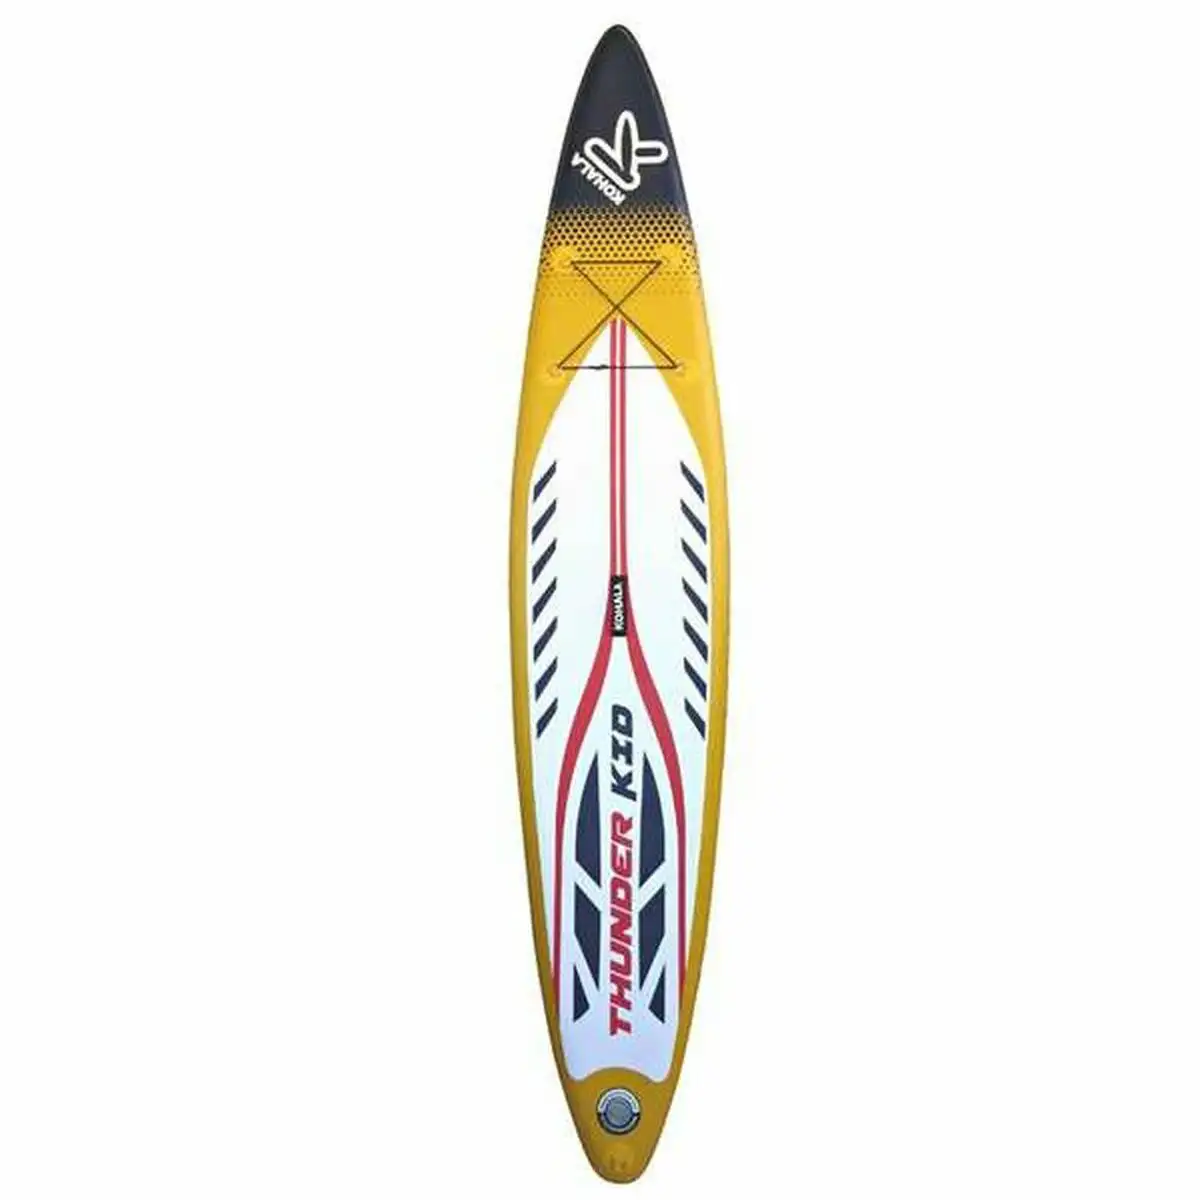 Planche de paddle surf kohala thunder kid jaune 15 psi 320 x 61 x 12 cm _9919. Bienvenue chez DIAYTAR SENEGAL - Où le Shopping Rencontre la Qualité. Explorez notre sélection soigneusement conçue et trouvez des produits qui définissent le luxe abordable.